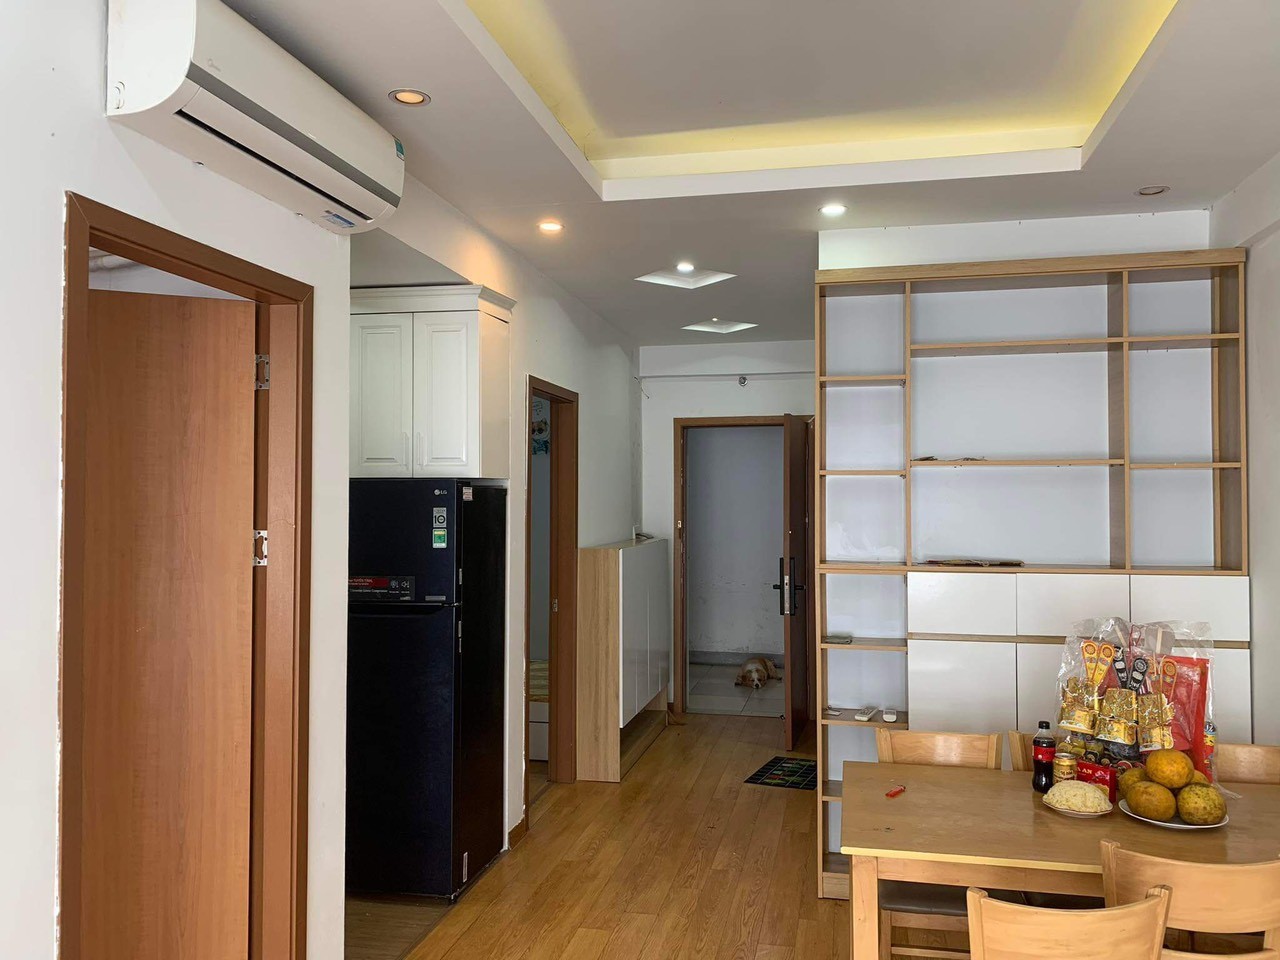 Cần bán căn hộ 2 ngủ tầng cao full nội thất mới, giá rẻ nhất KDT Thanh Hà Mường Thanh